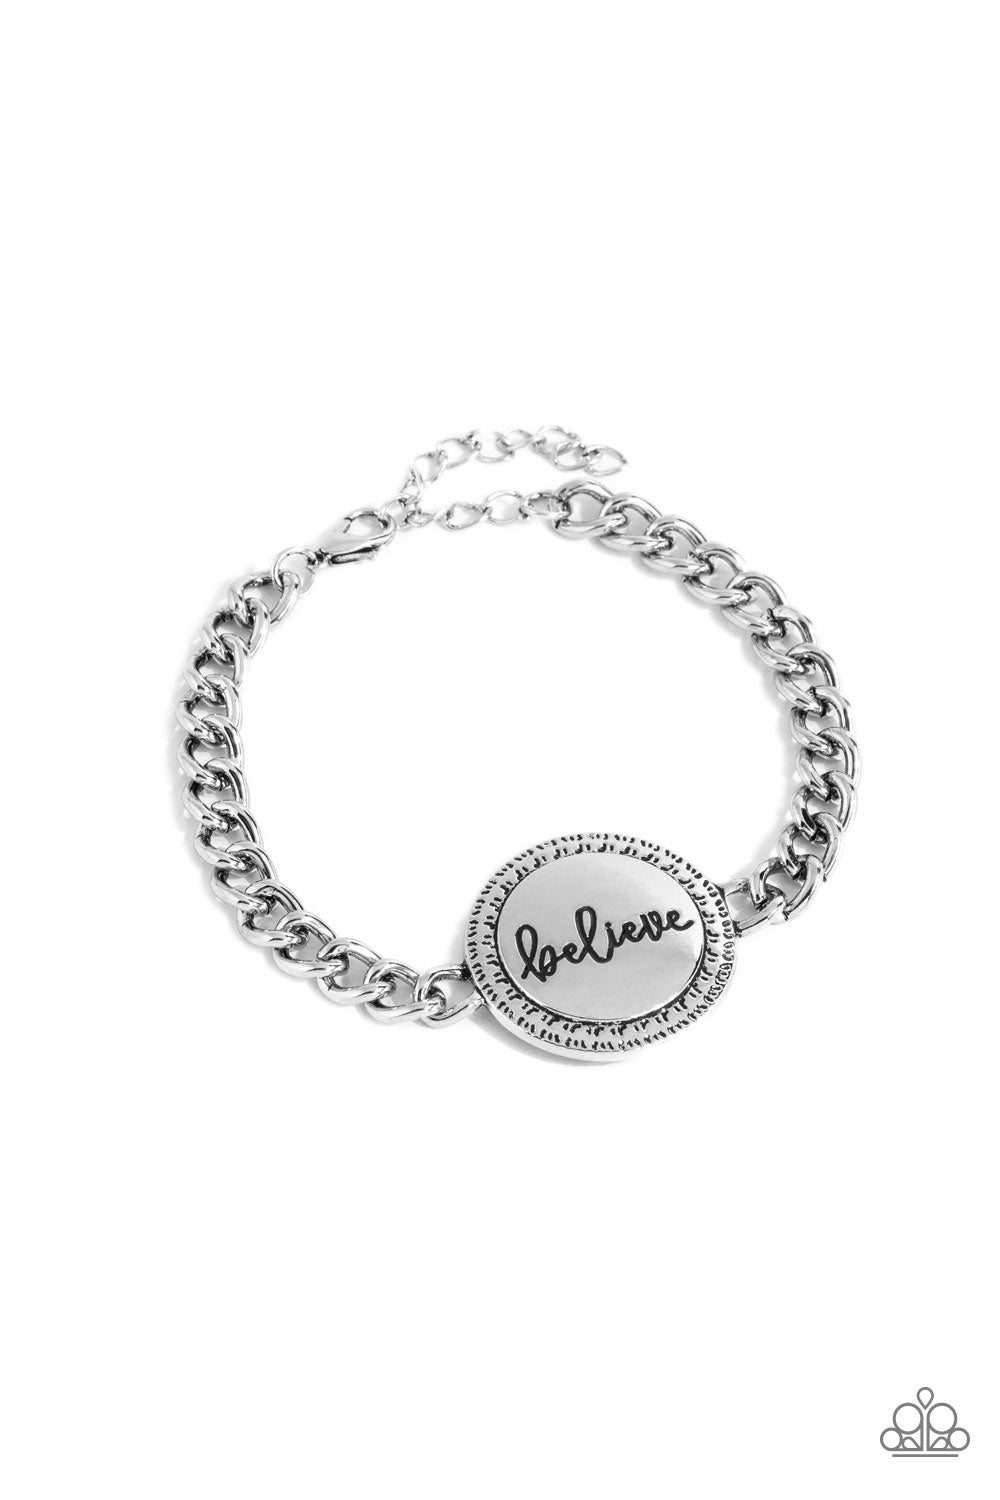 Hope and Faith - Silver (Believe) Bracelet